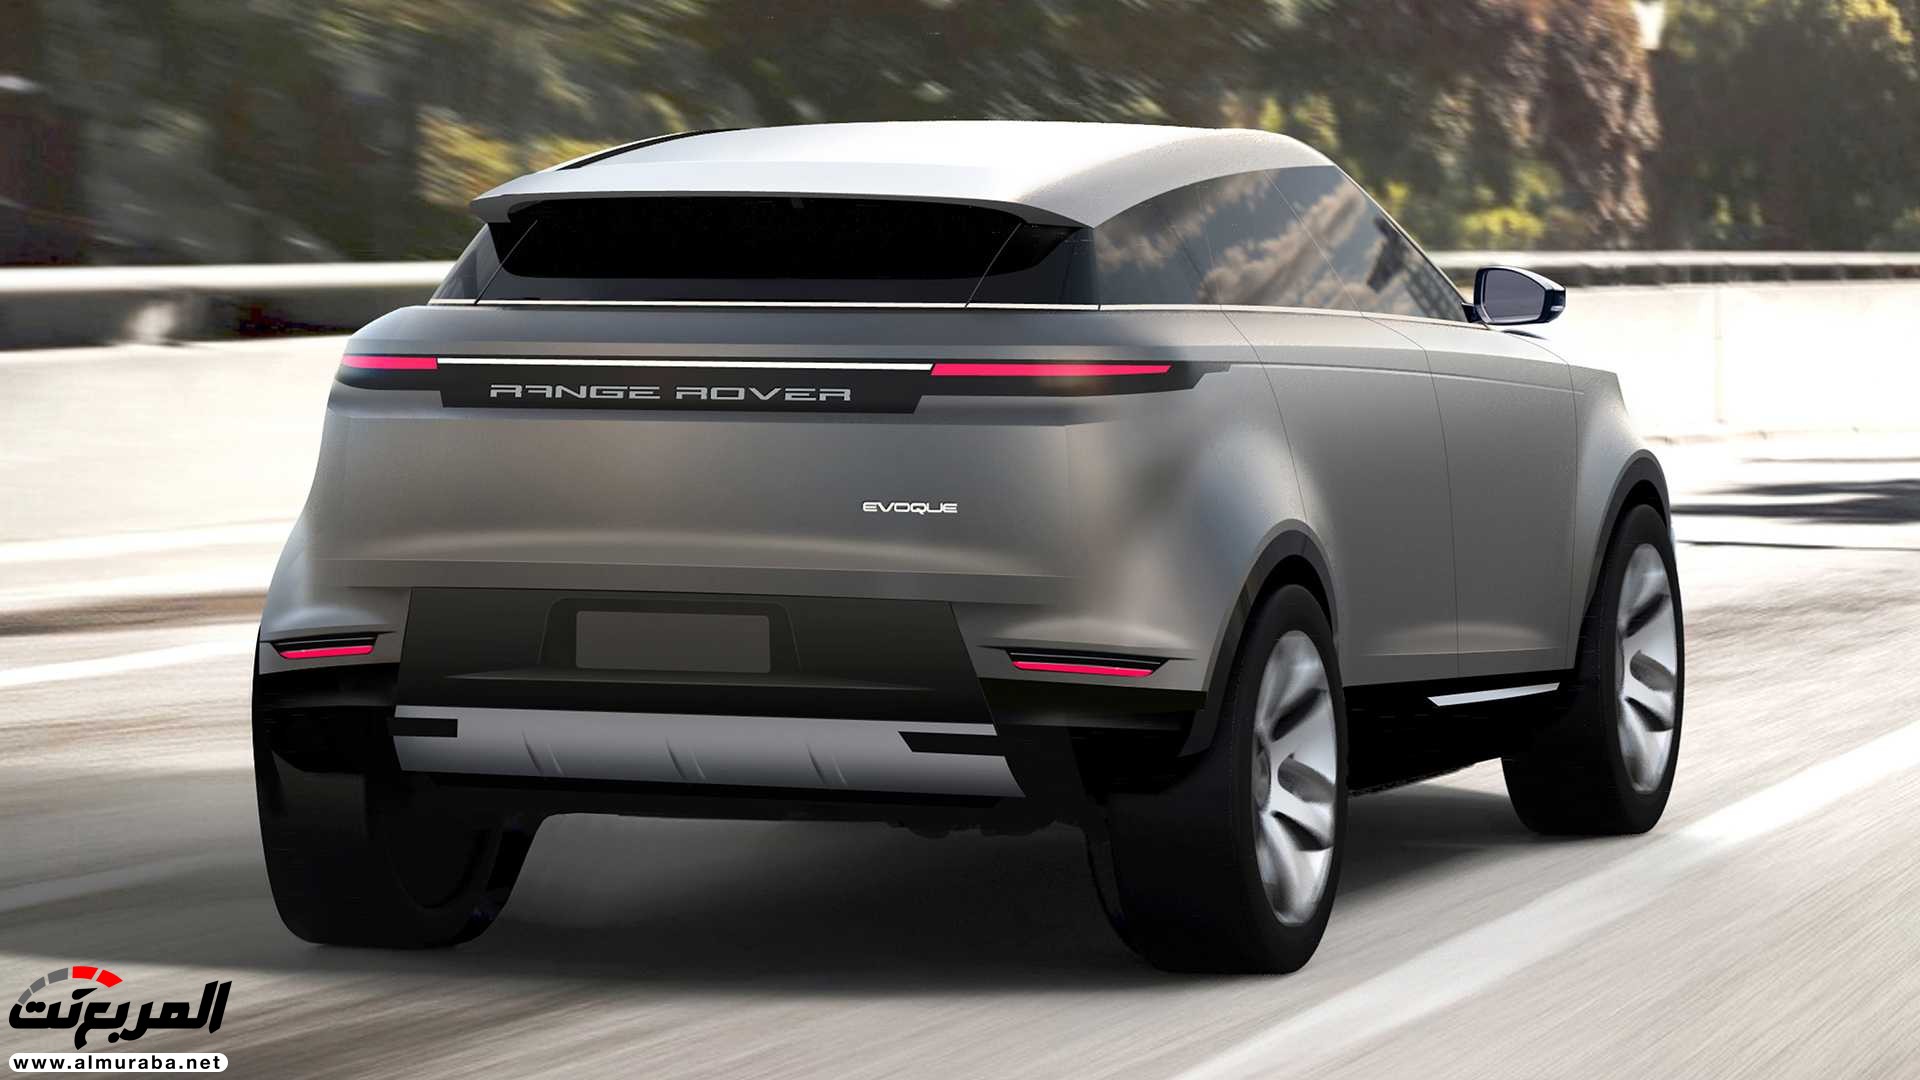 اهم 7 معلومات عن رنج روفر ايفوك 2020 الجديدة كلياً Range Rover Evoque 359